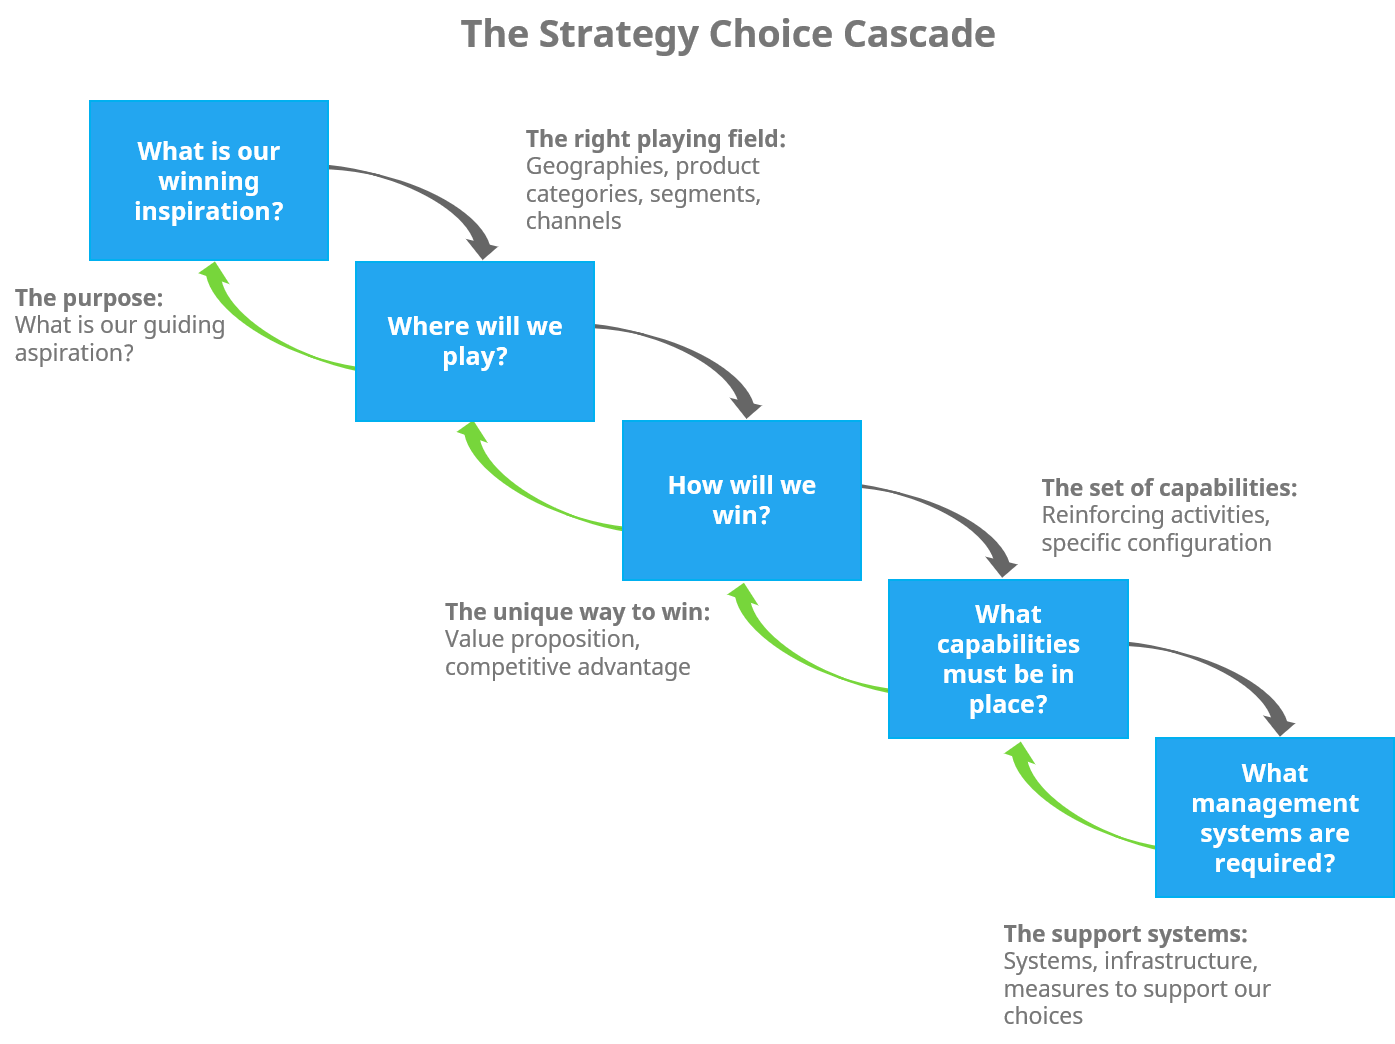 The strategy choice cascade